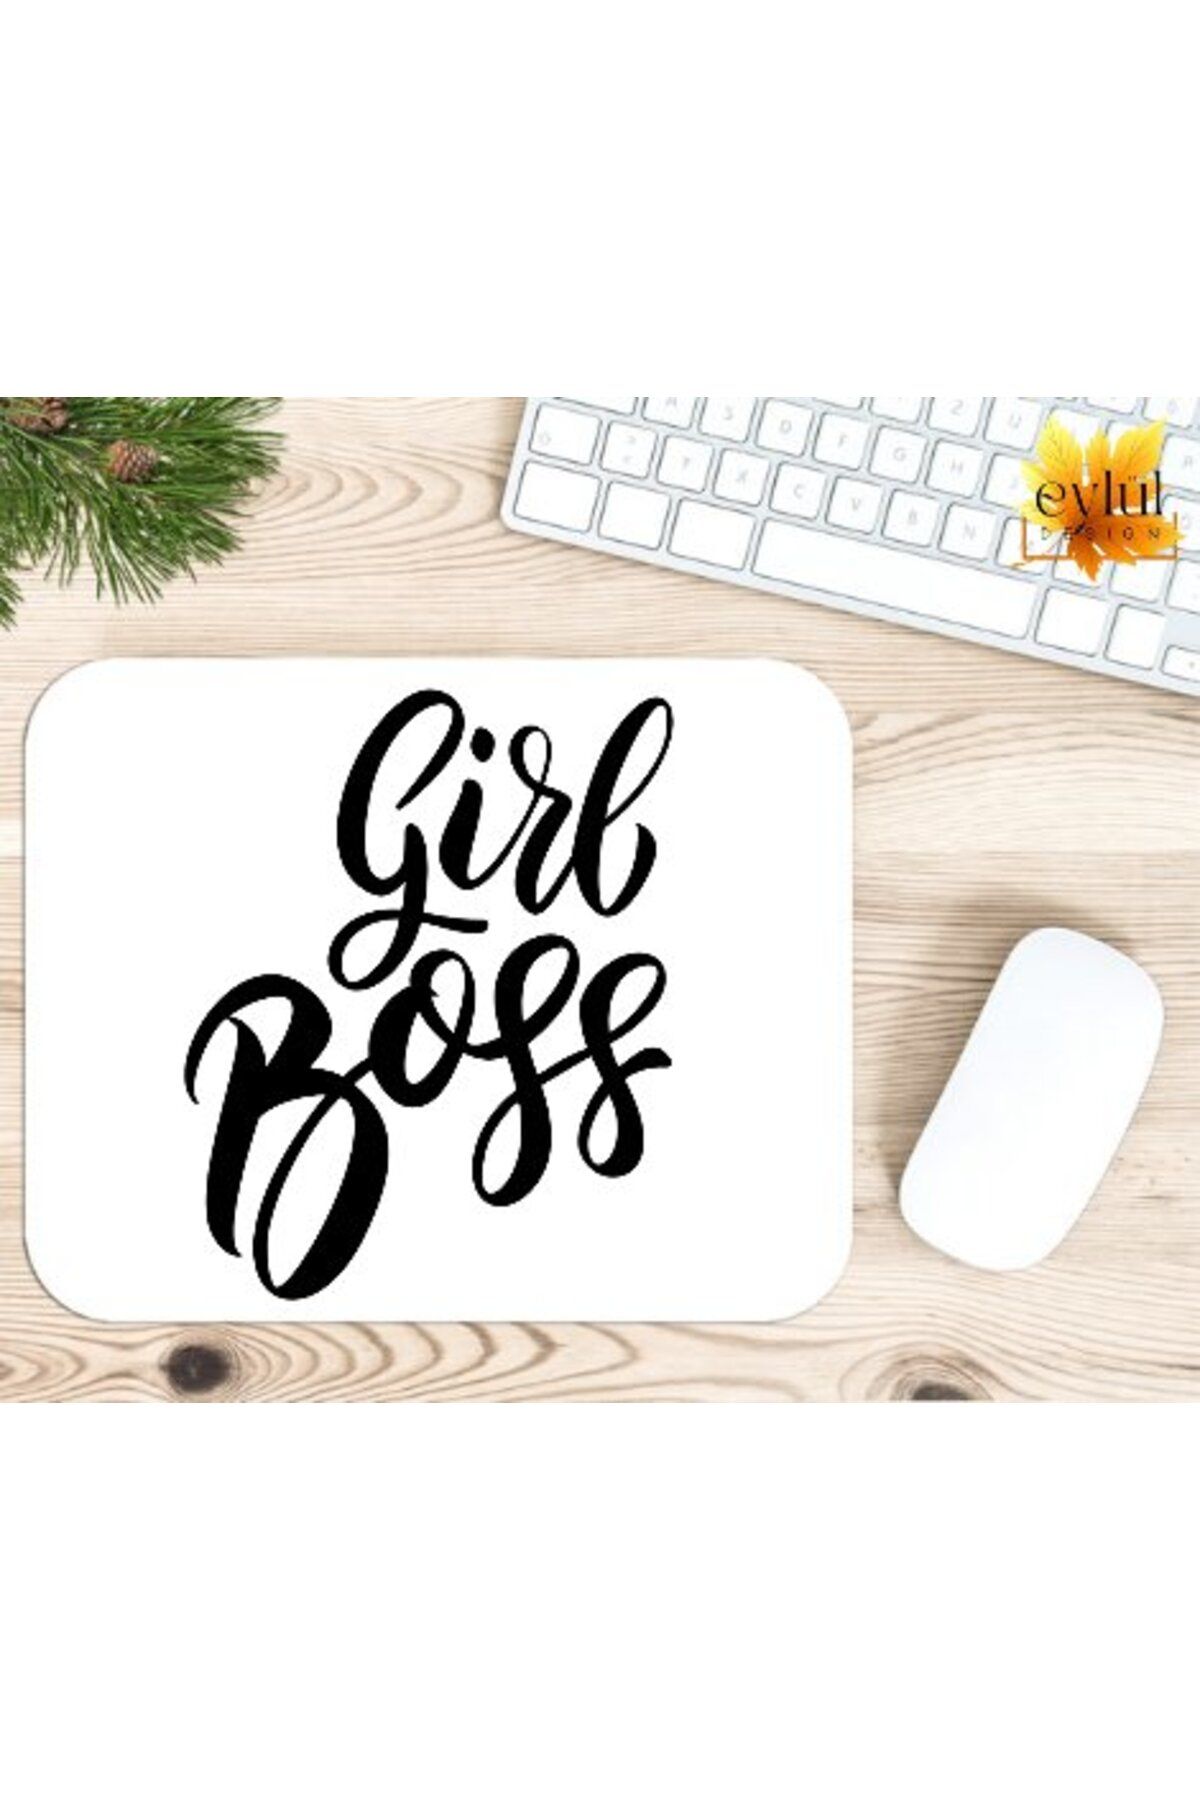 Eylül Design Girl Boss Baskılı Özel Tasarım Dikdörtgen Kaydırmaz Mousepad